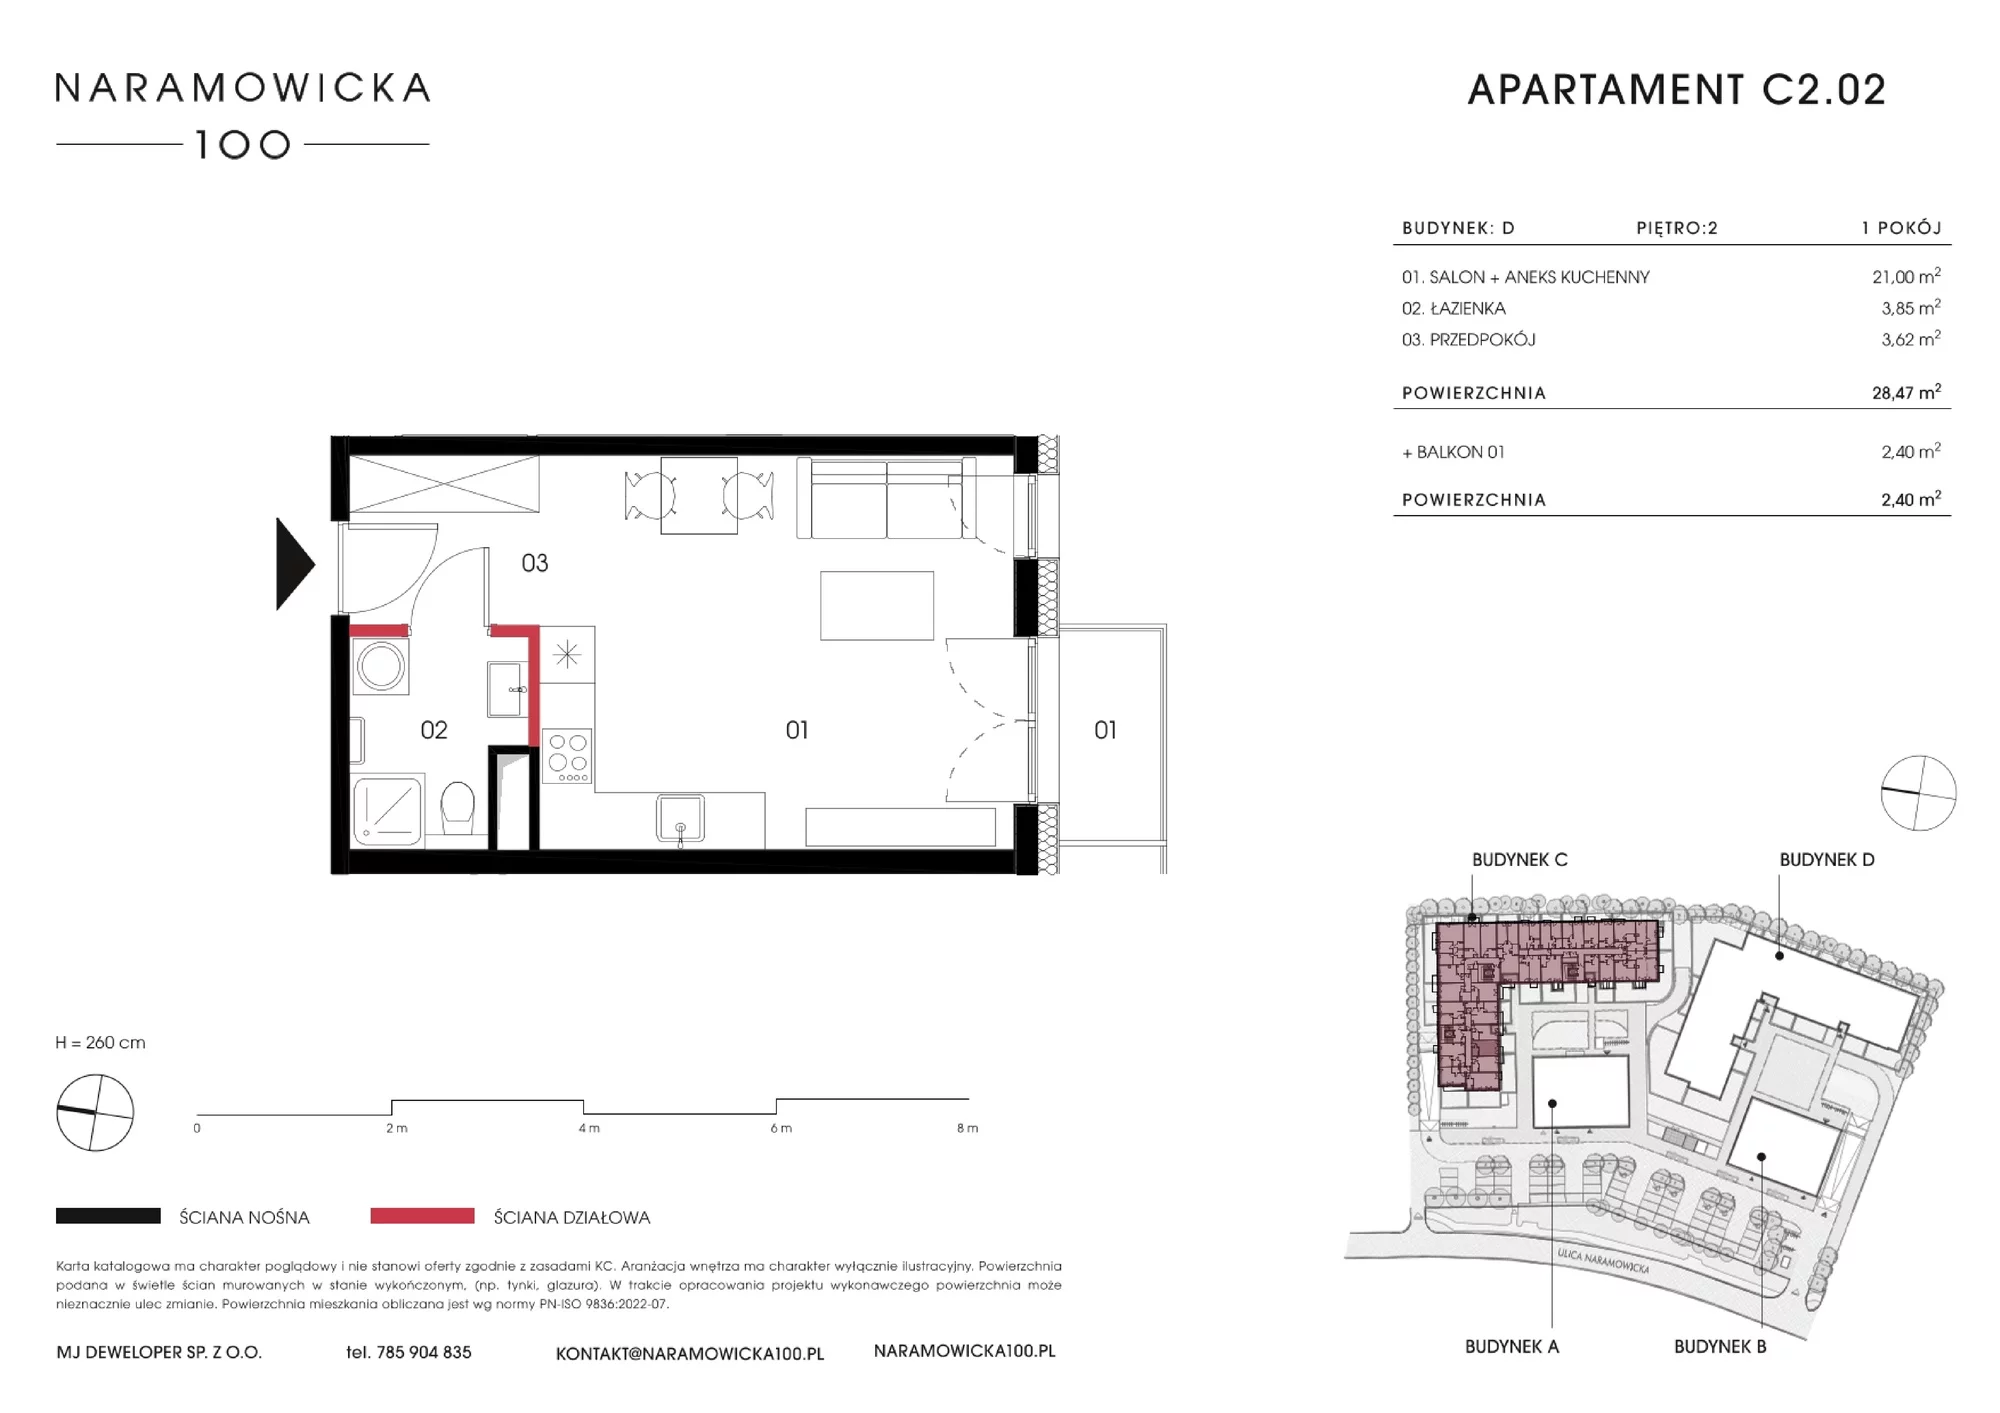 Mieszkanie 28,35 m², piętro 2, oferta nr C 2.02, Naramowicka, Poznań, Winogrady, Winogrady, ul. Naramowicka 100